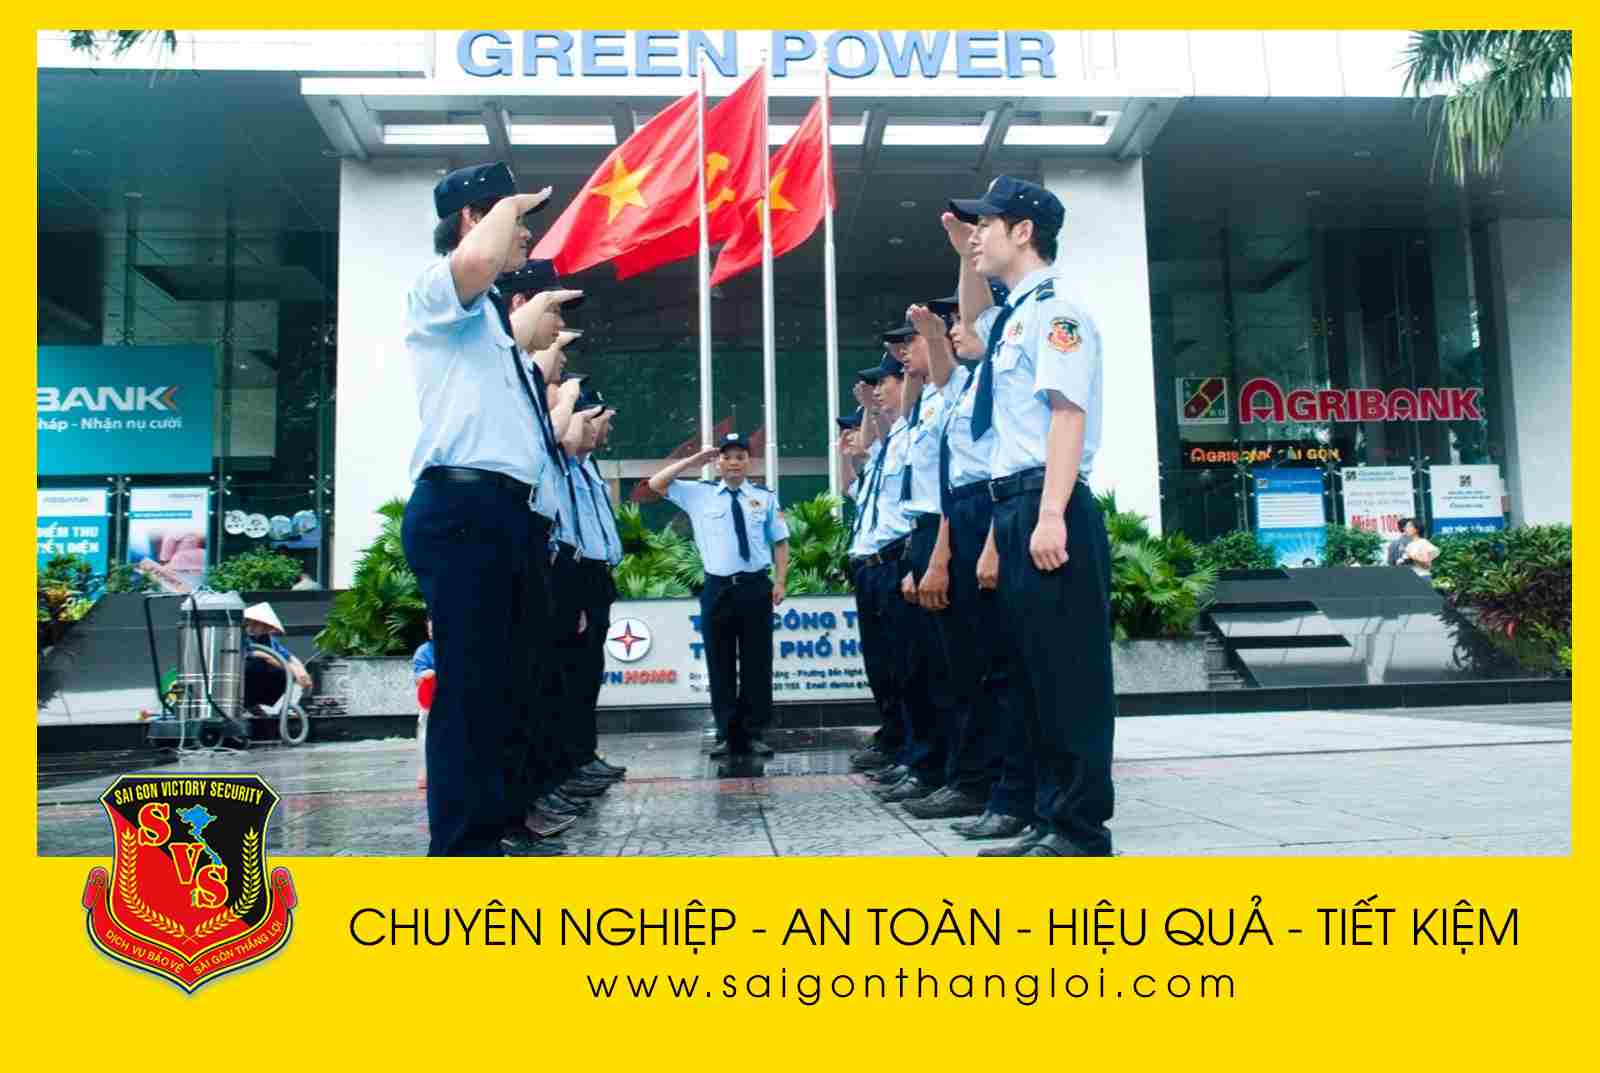 Sài Gòn Thắng lợi cung cấp dịch vụ bảo vệ tốt nhất cho khách hàng